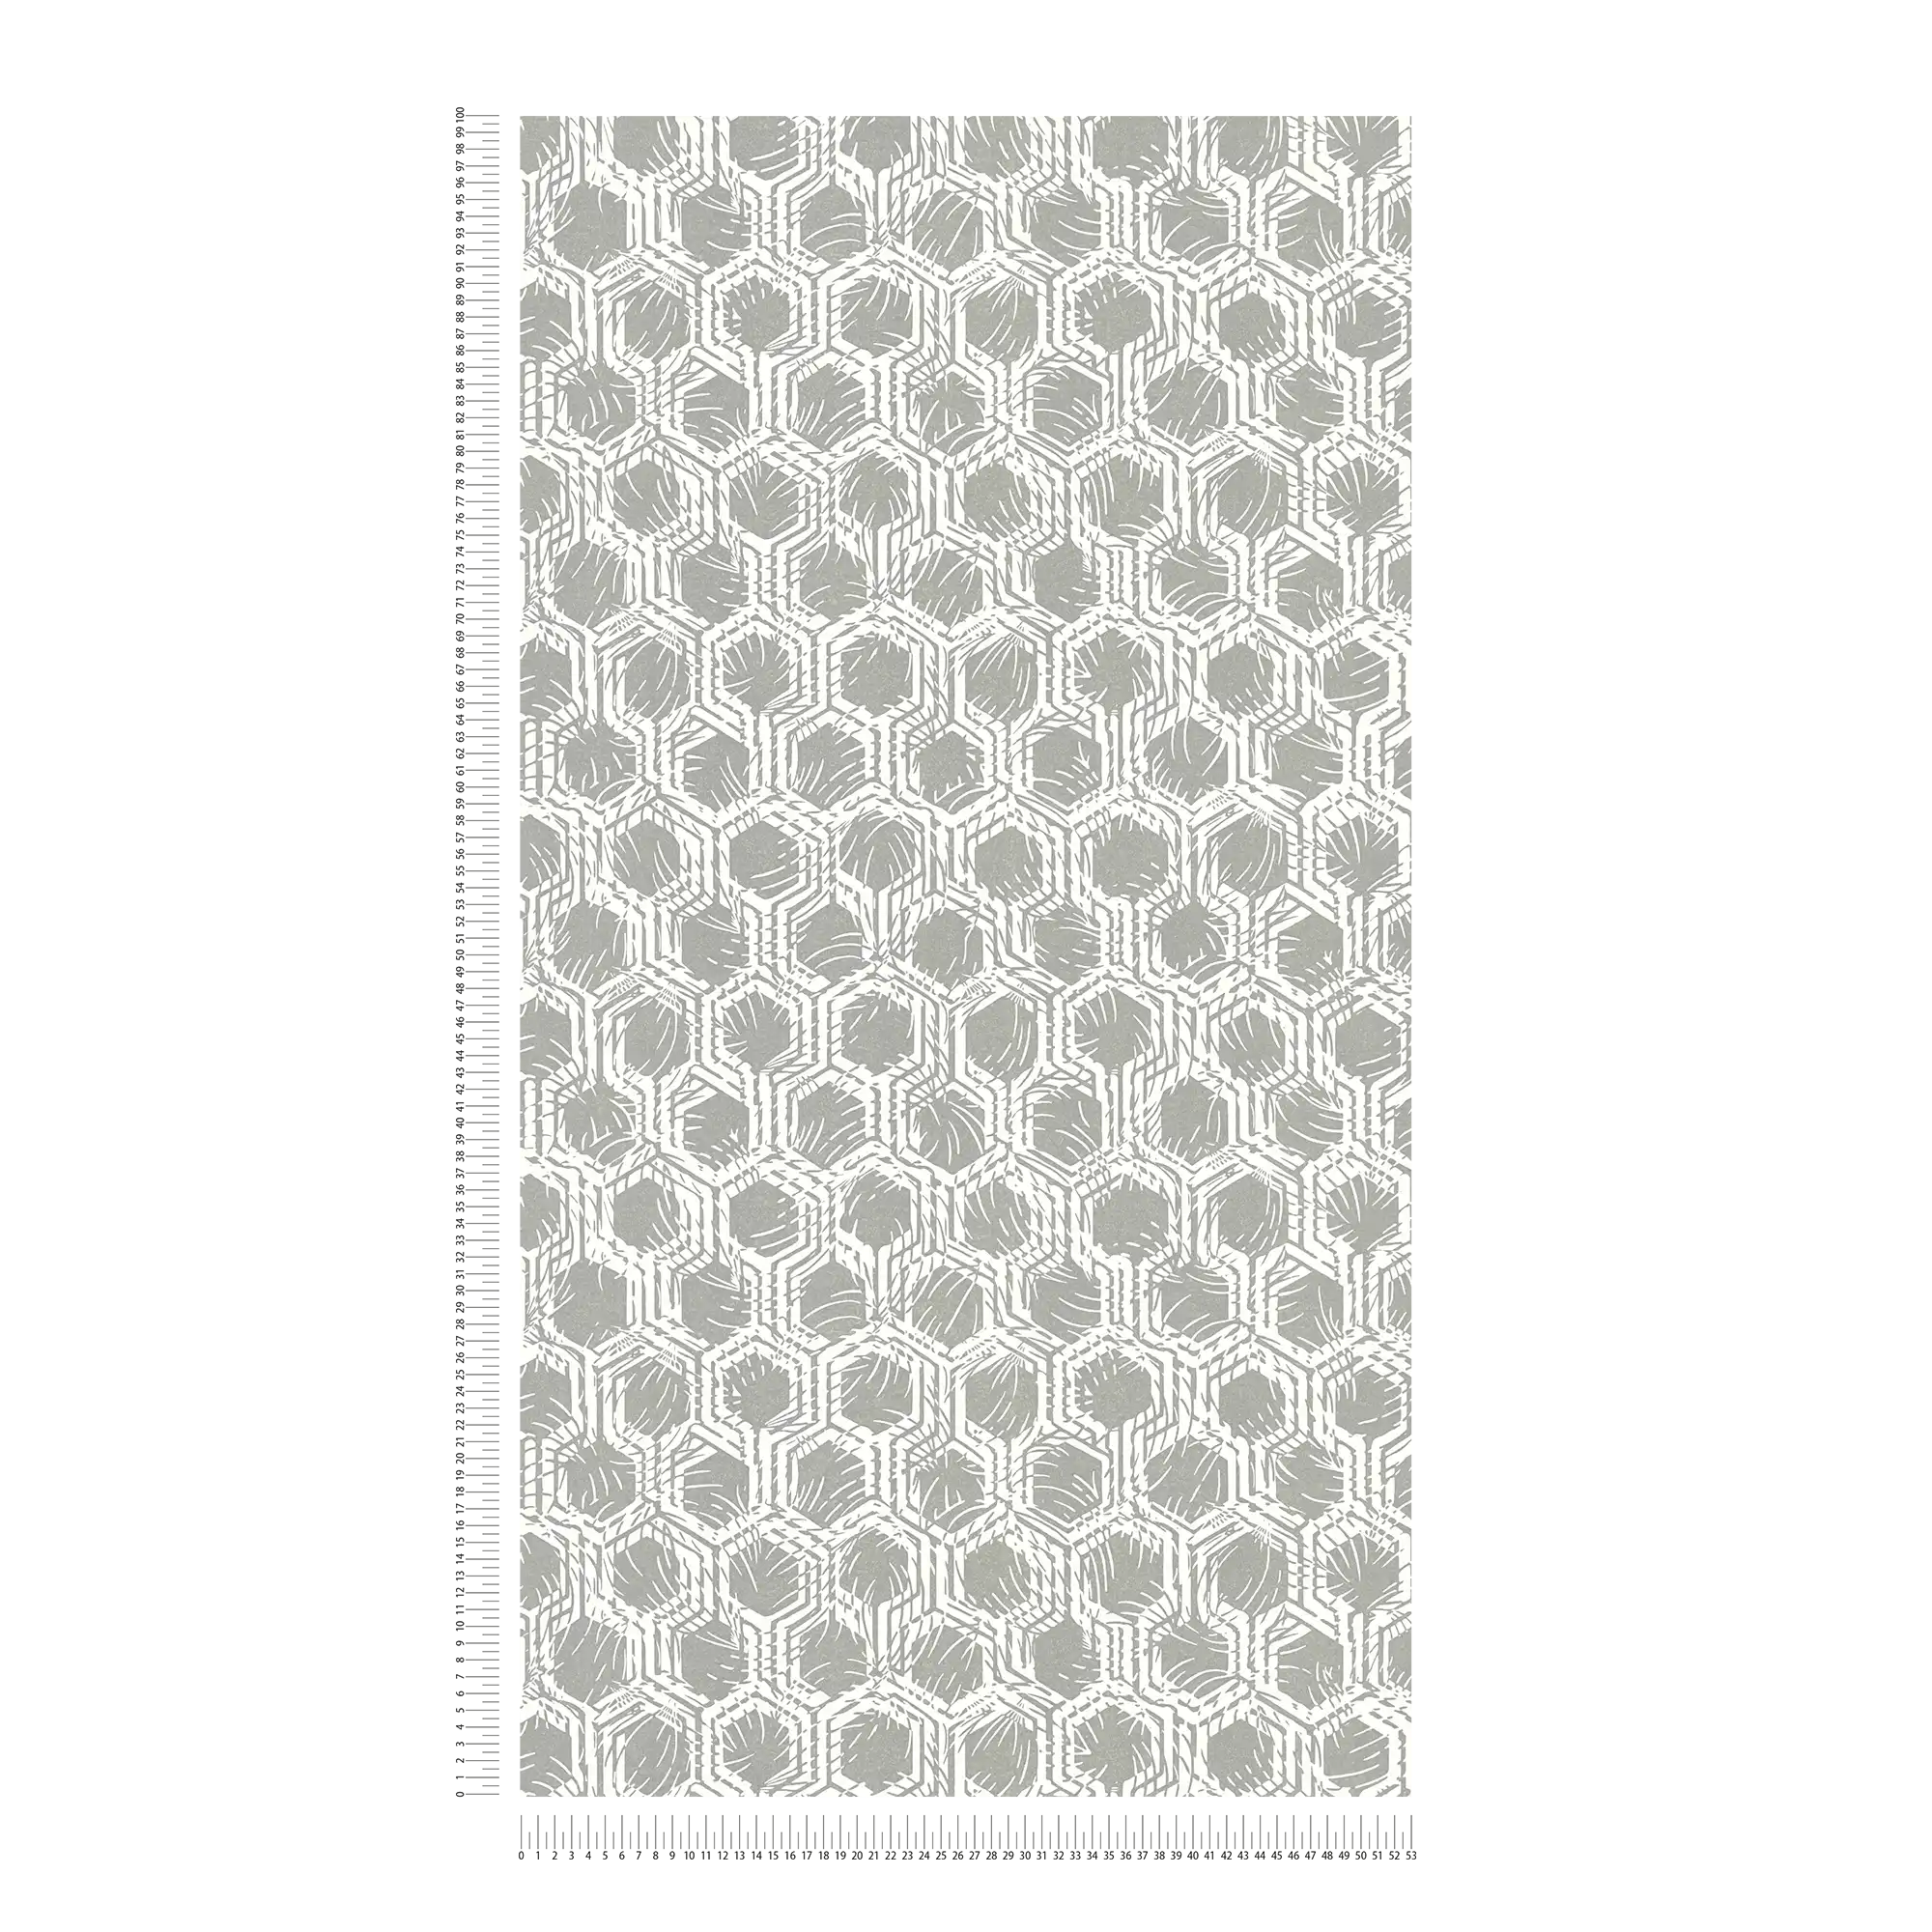             Geometrisch patroonbehang met metallic kleuren - zilver, wit
        